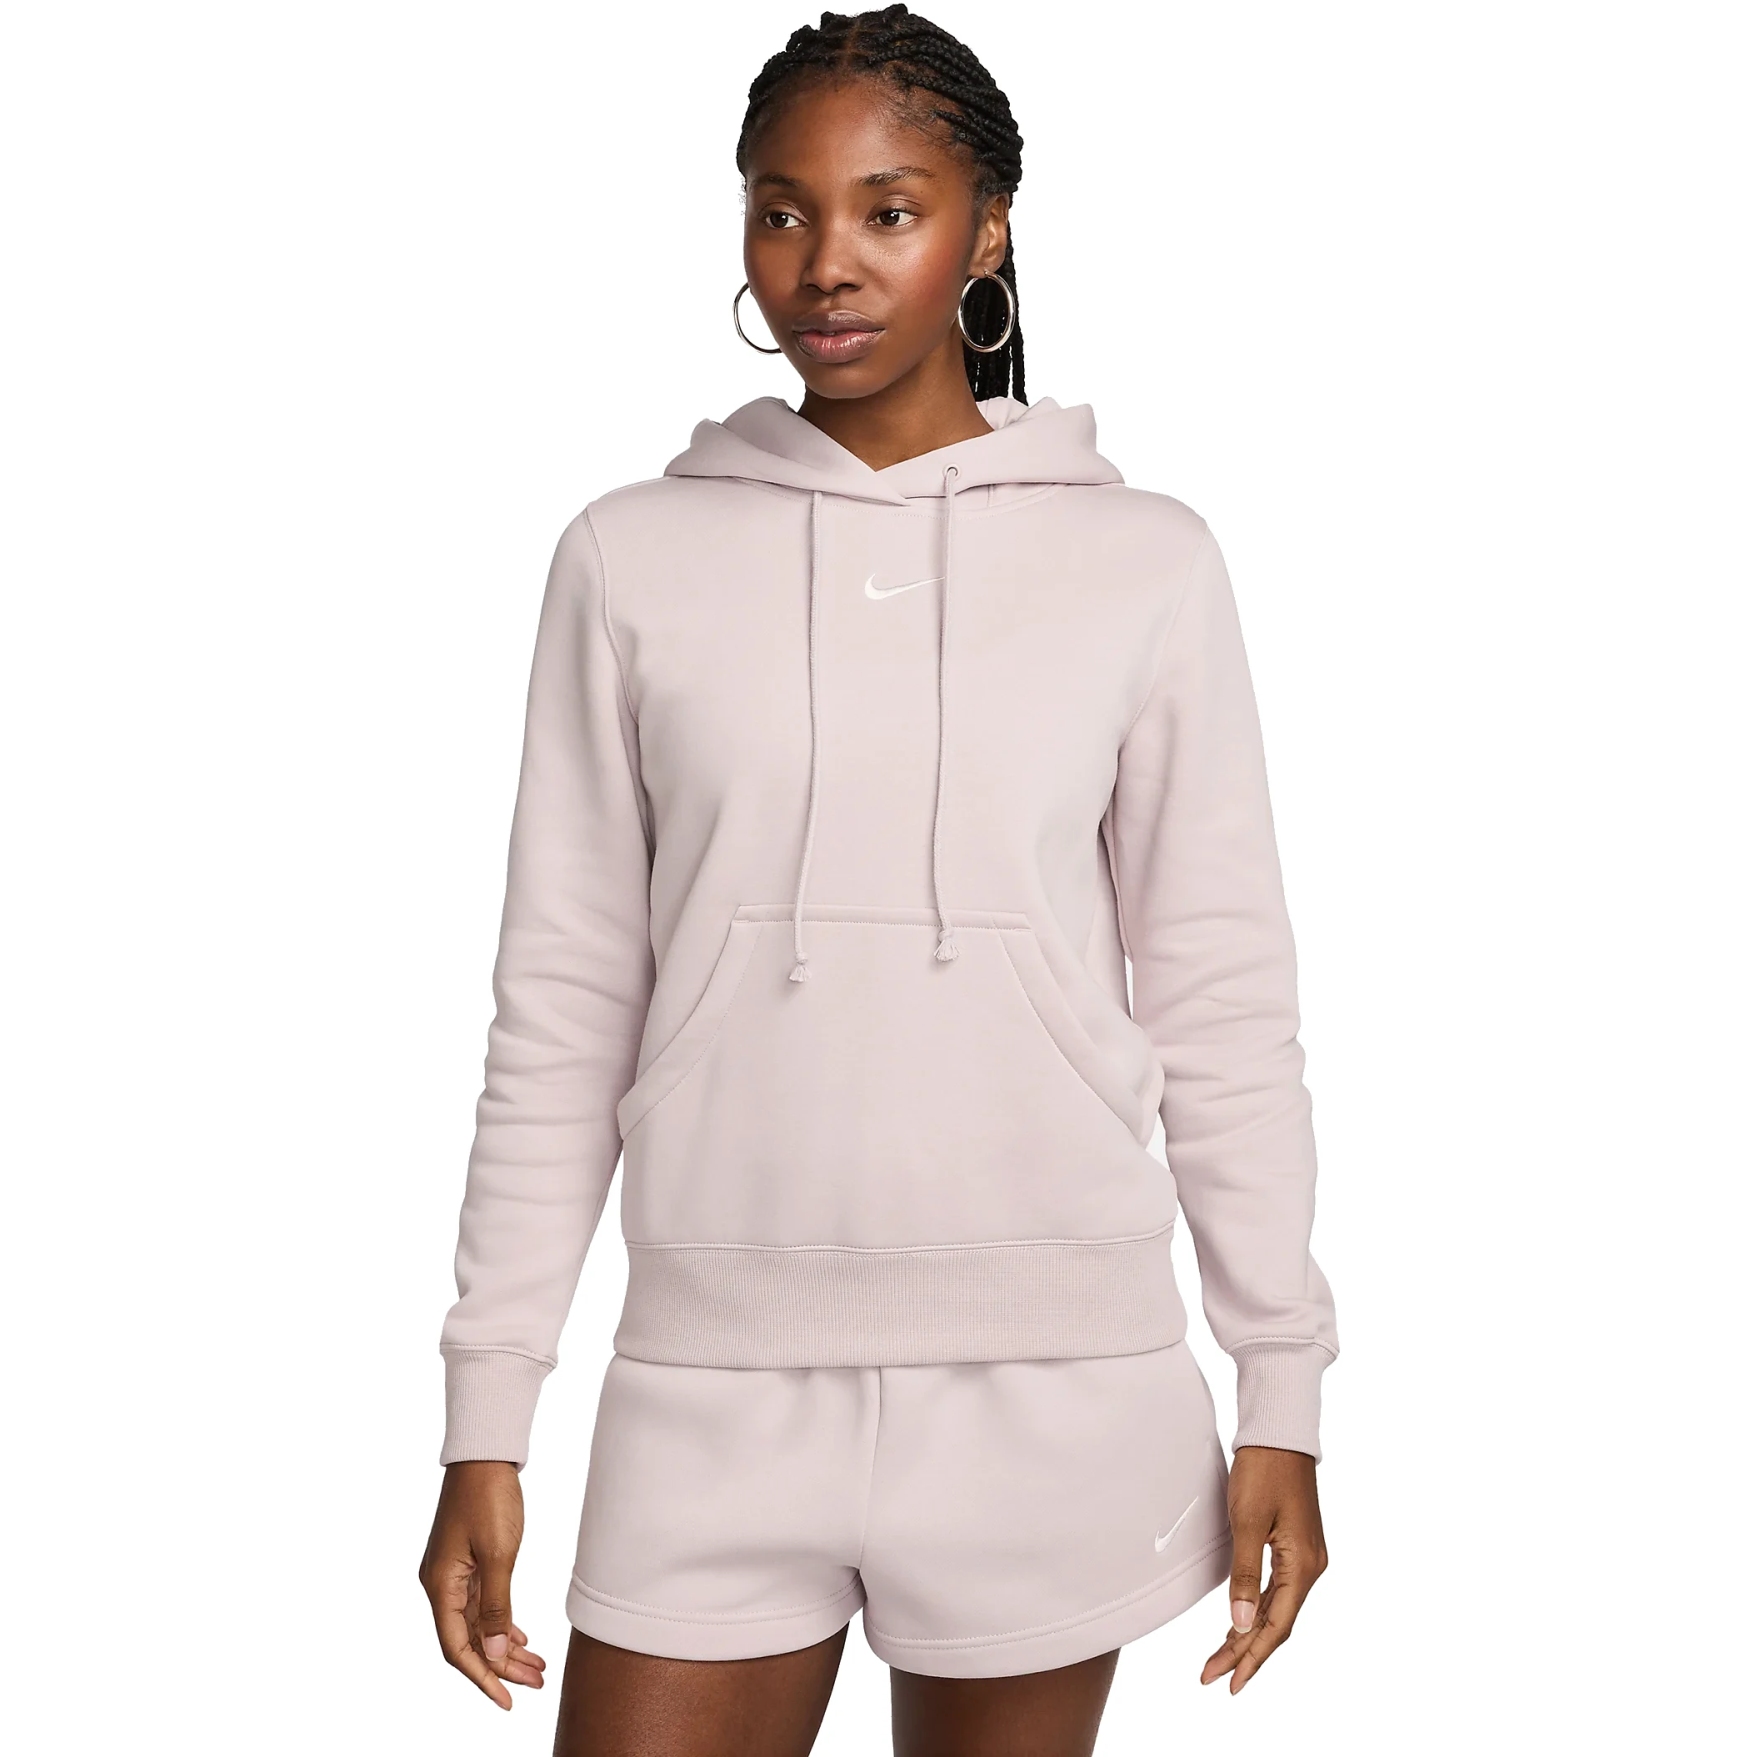 Produktbild von Nike Sportswear Phoenix Fleece Hoodie Damen - platinum violet/sail DQ5872-019